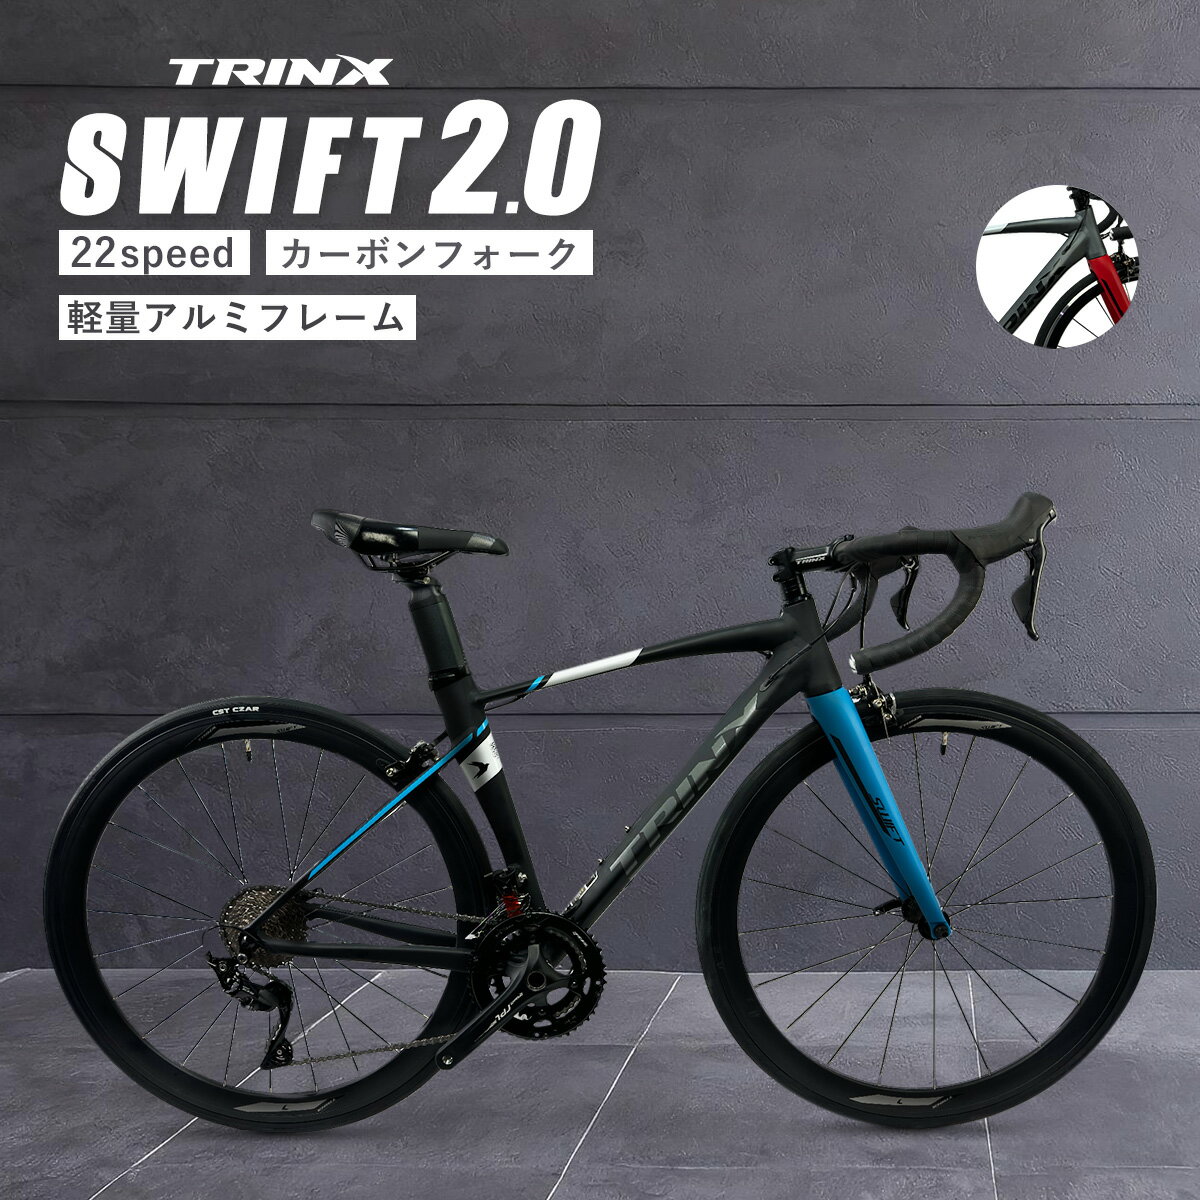 【0のつく日★ポイント5倍】本格派ロードバイク レース 入門からレース・競技用として TRINX SWIFT 自転車 カーボン シマノ 22段変速 700c サイクリング